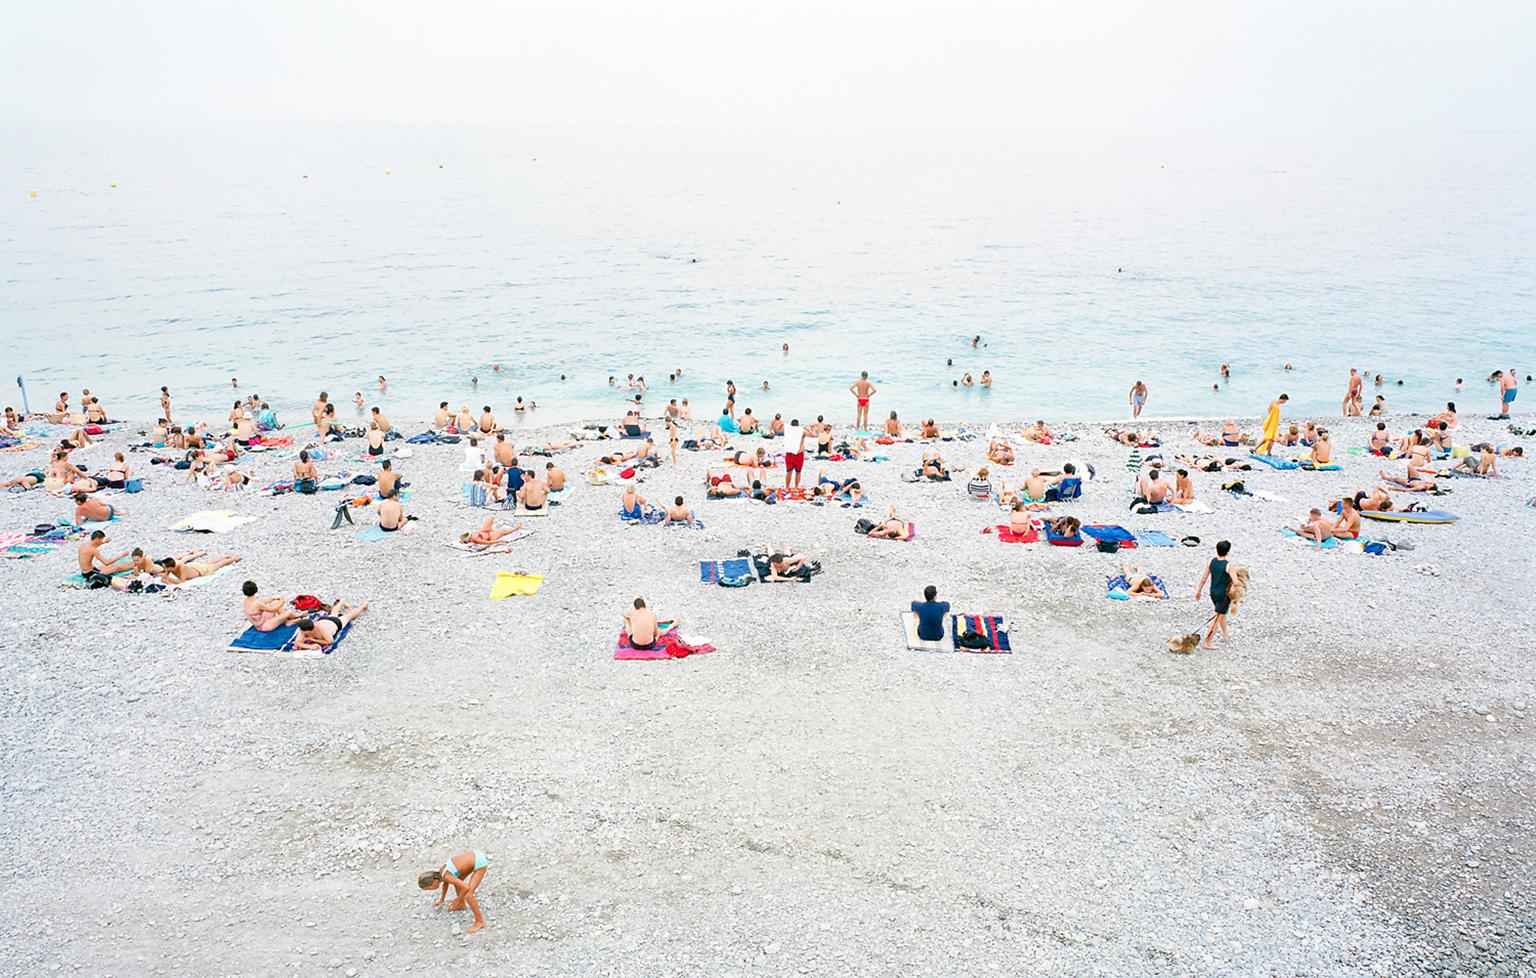 Color Photograph Frank Schott - Nizza - photographie grand format d'une scène de plage d'été dans le sud de la France